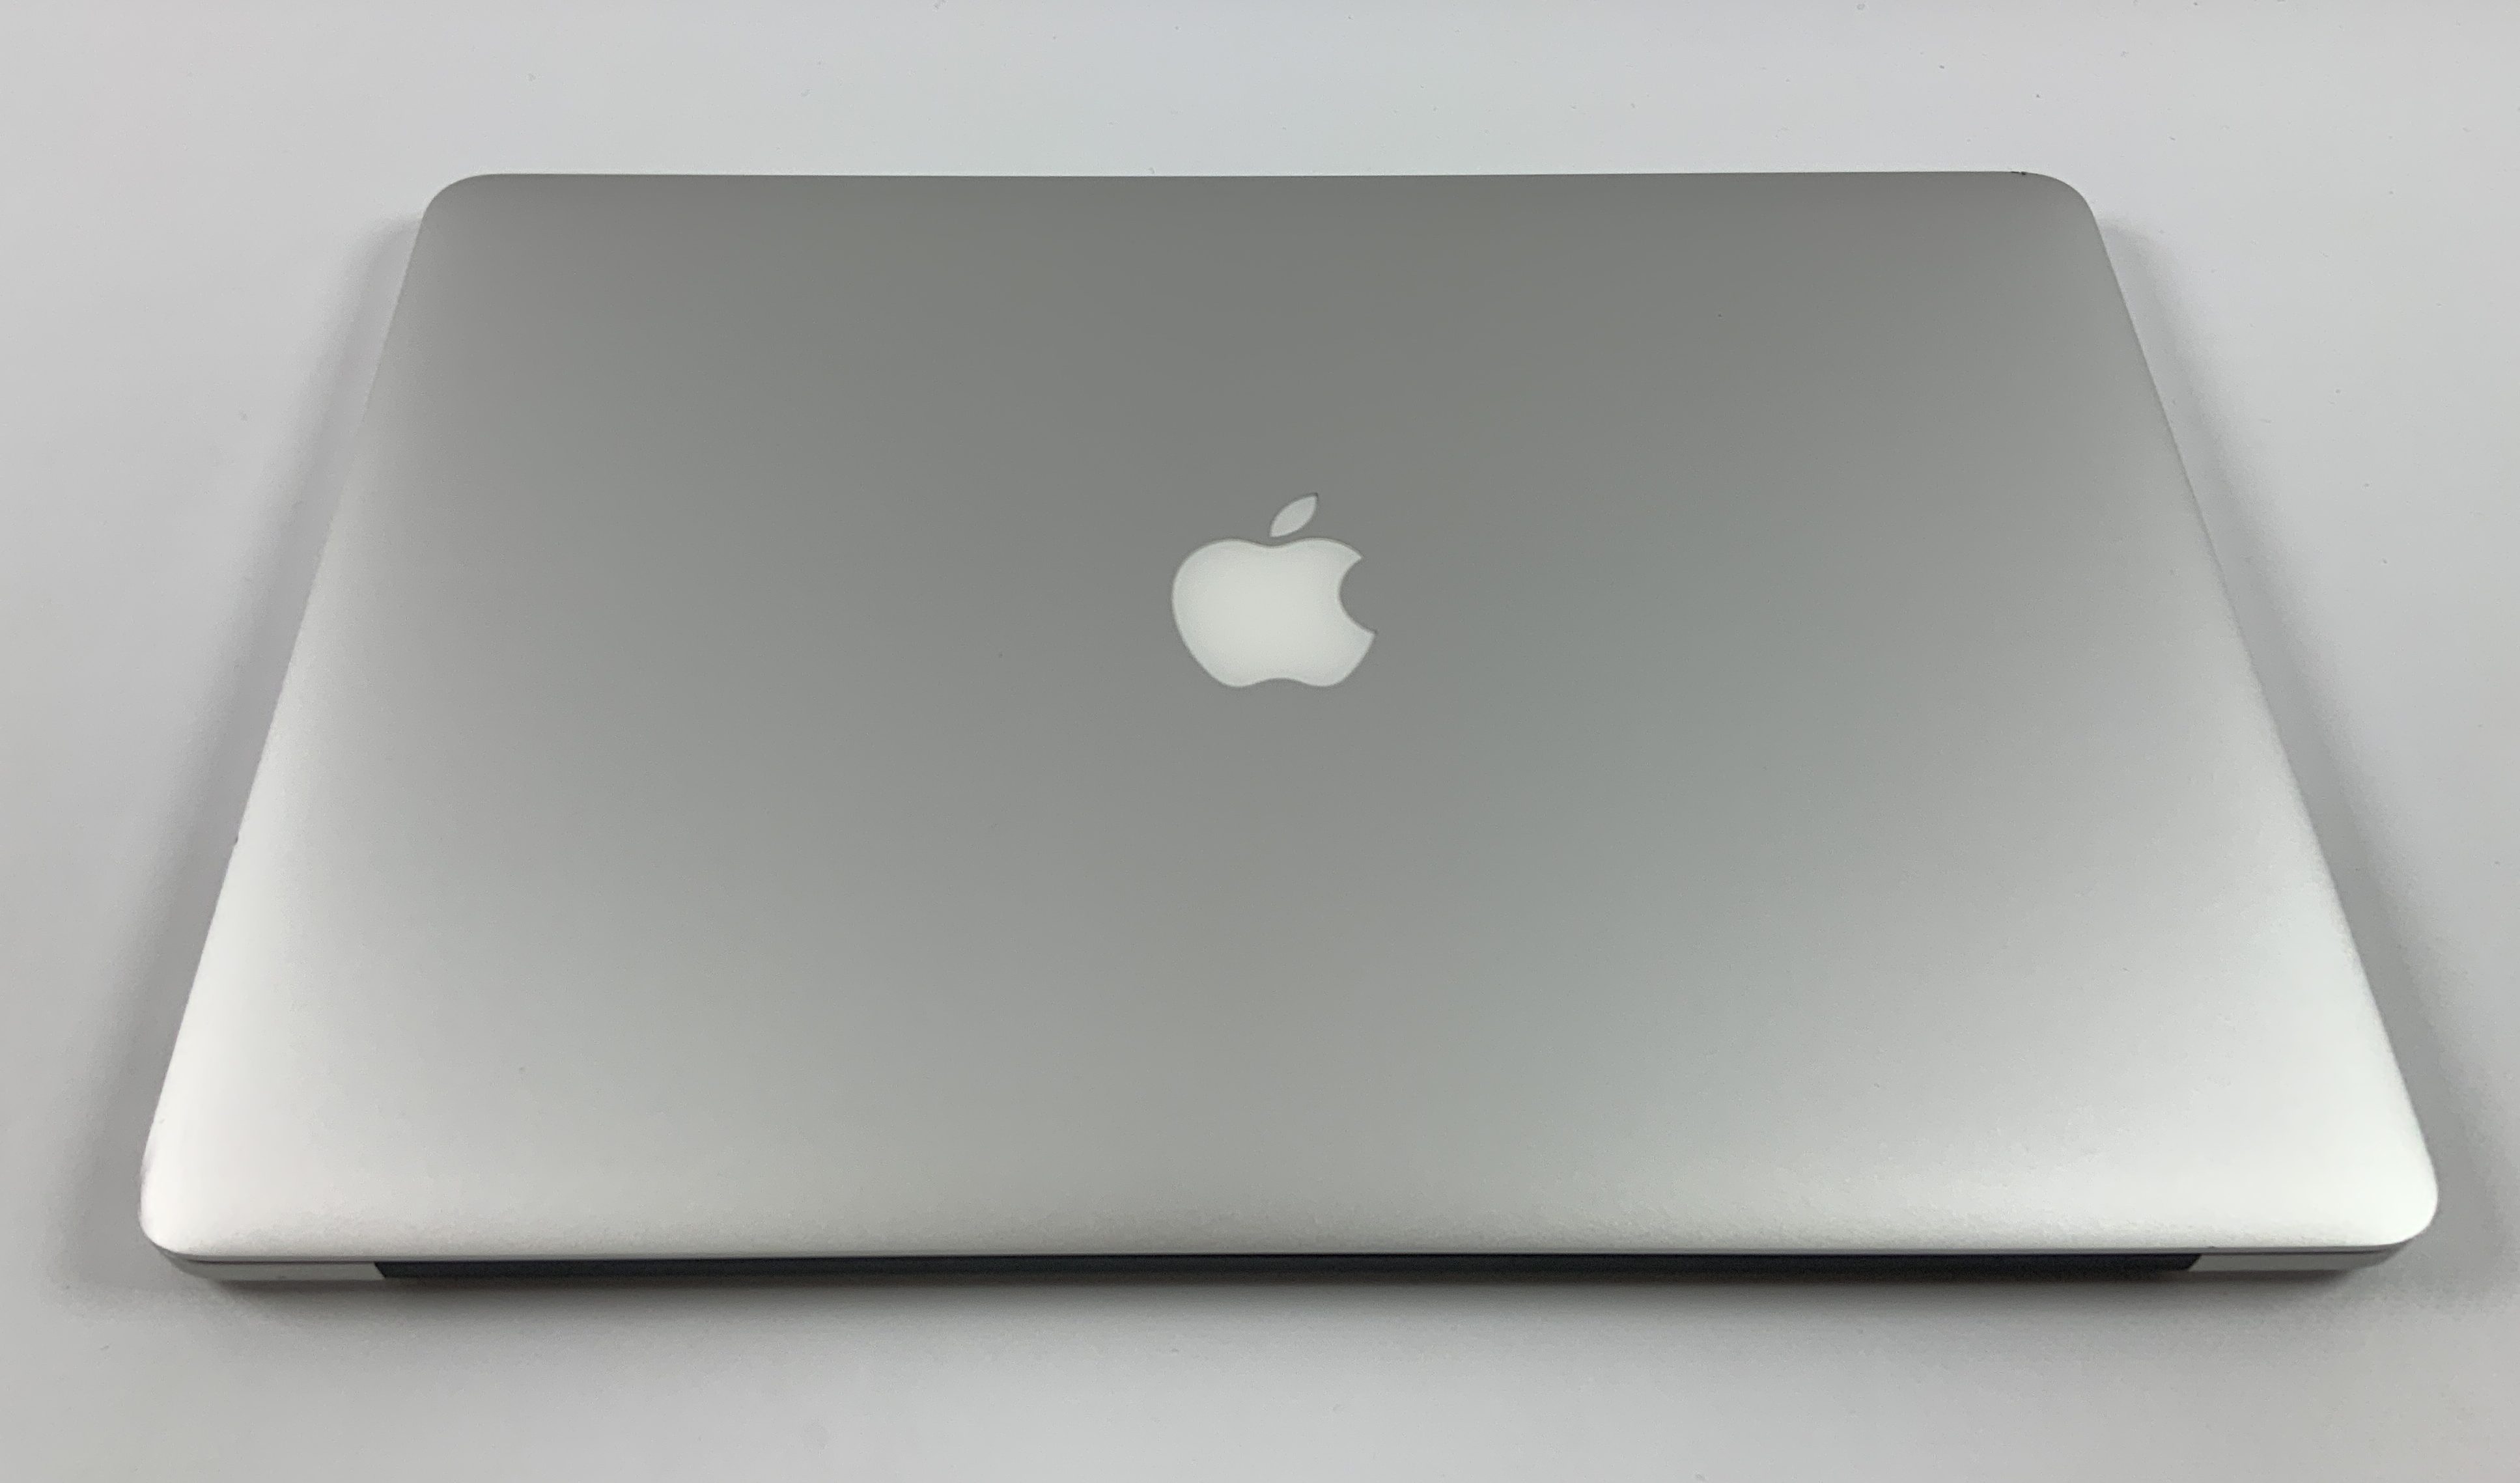 MacBook Pro Retina 15" Mid 2015 (Intel Quad-Core i7 2.2 GHz 16 GB RAM 256 GB SSD), Intel Quad-Core i7 2.2 GHz, 16 GB RAM, 256 GB SSD, Bild 2